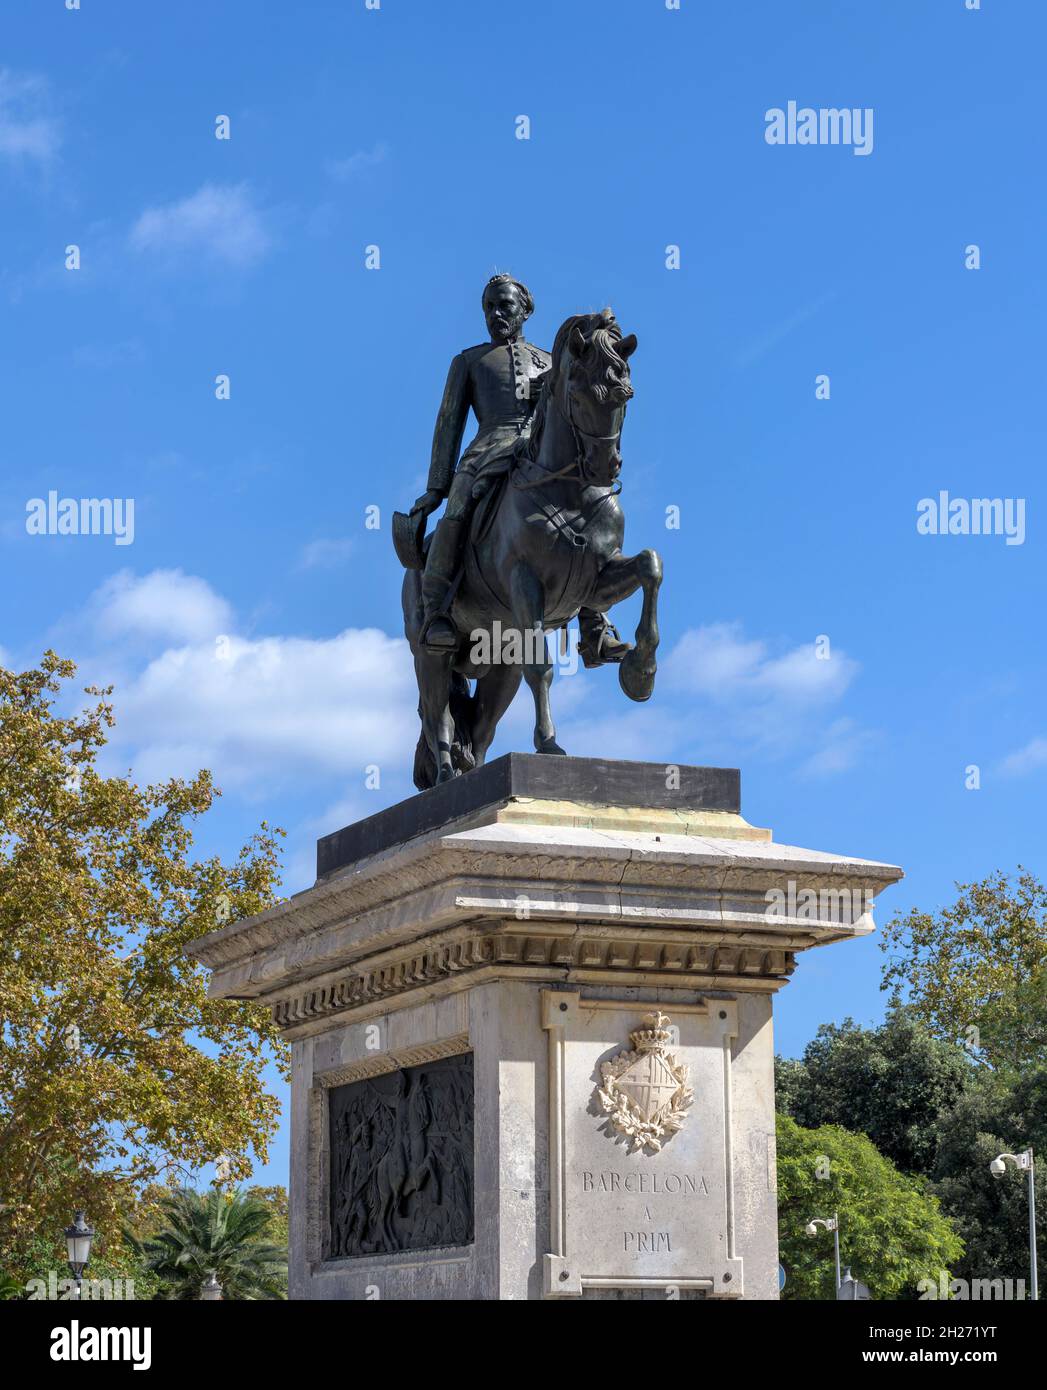 Statua di Joan Prom - una vista verticale ad angolo basso della statua equestre di bronzo del generale Joan Prom i Prats in piedi su un piedistallo di pietra, Barcellona, Spagna. Foto Stock